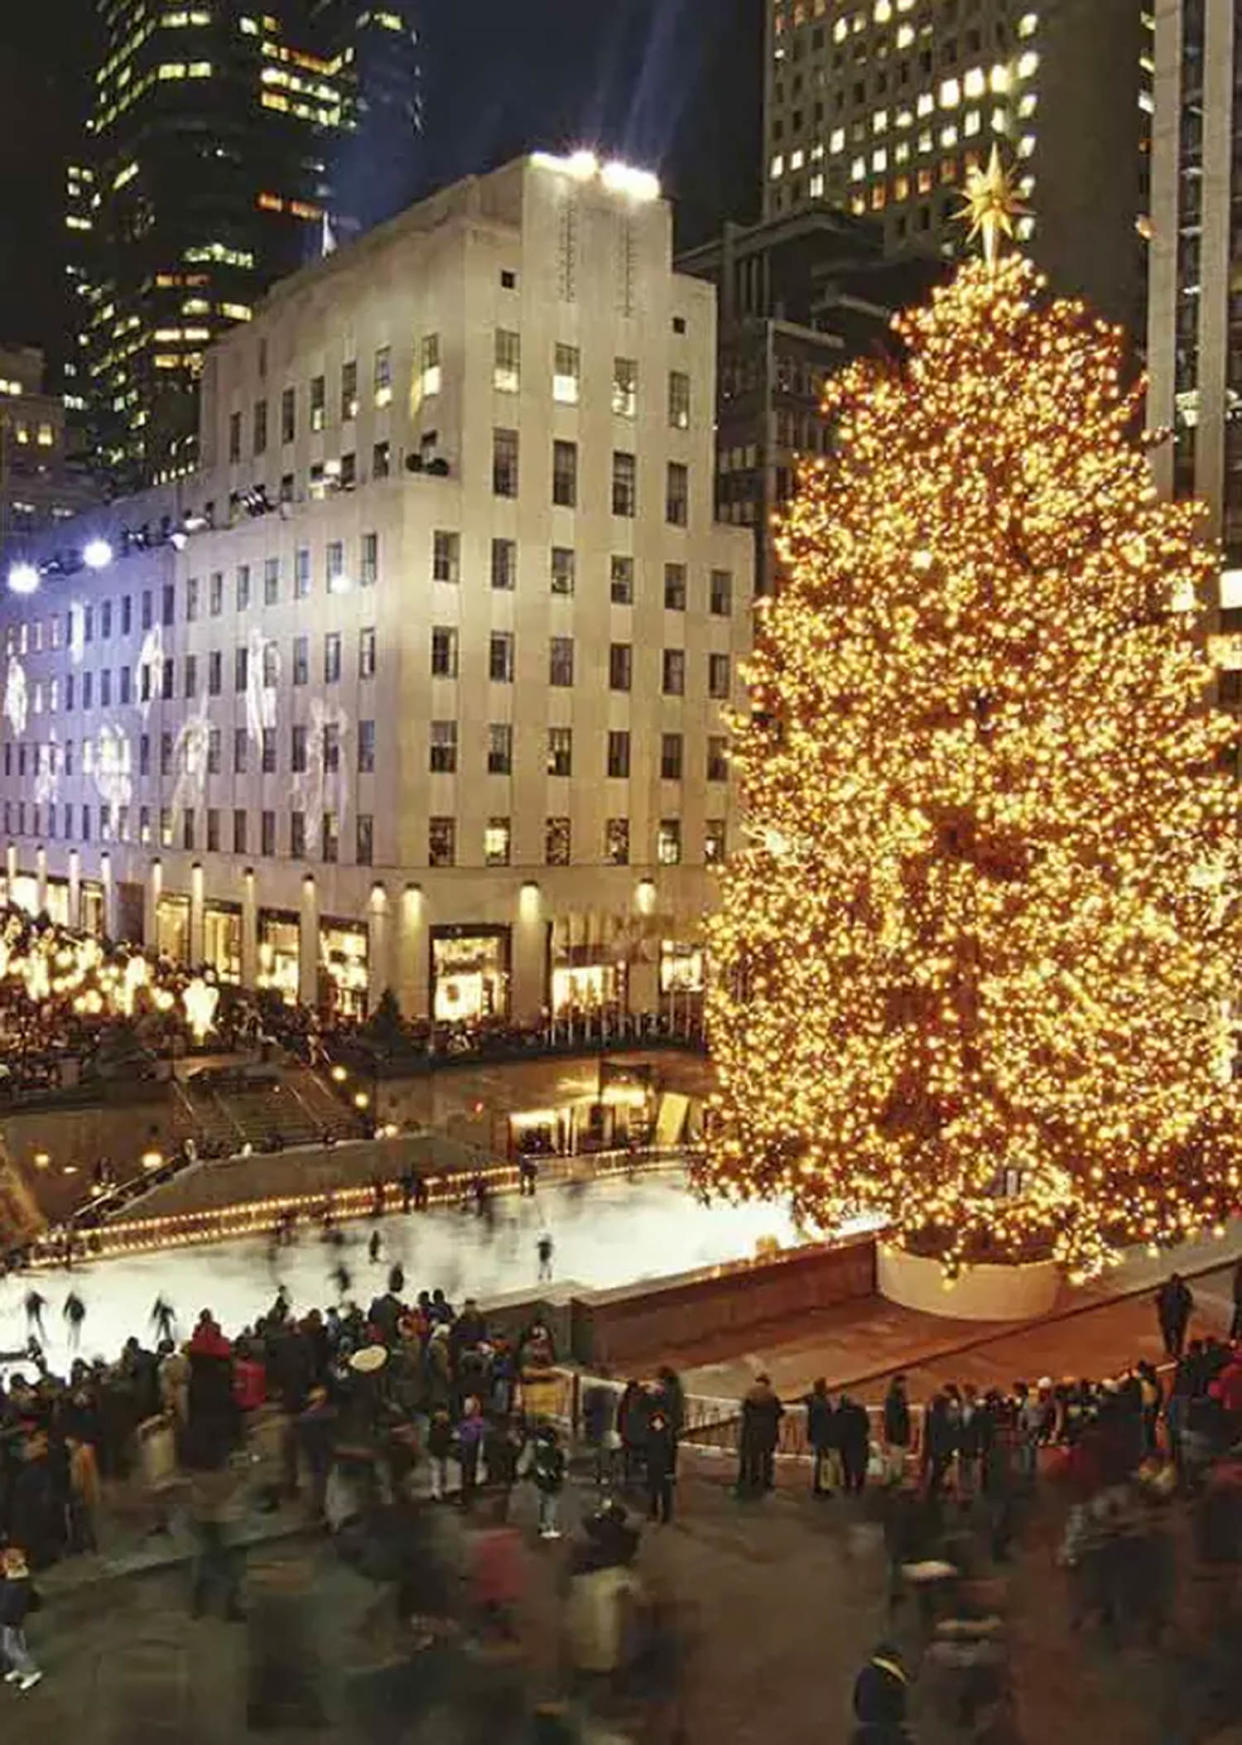 The Rockefeller Center Christmas Tree in 1999 (Rockefeller Center)